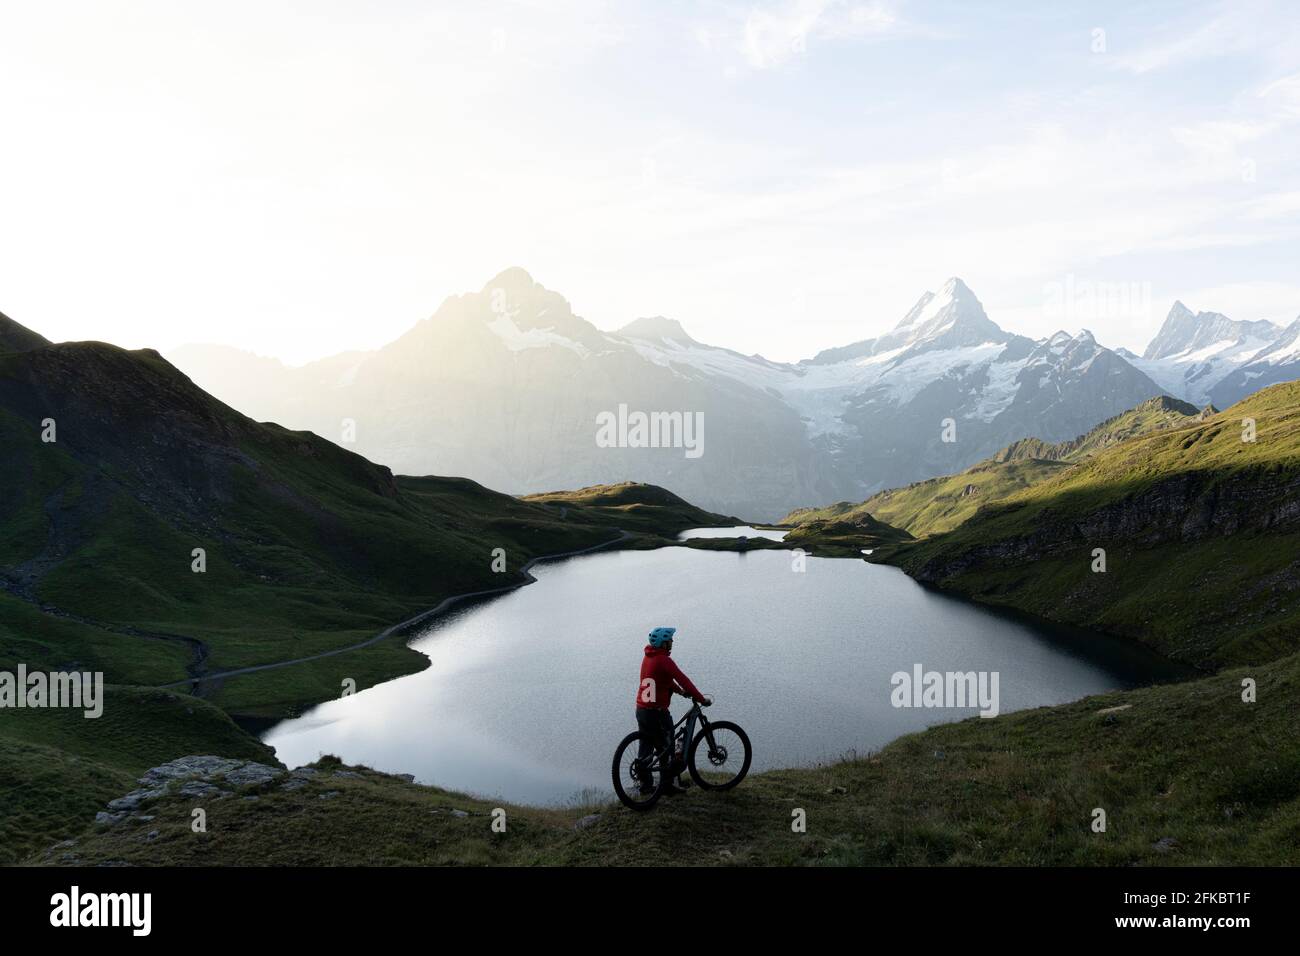 Randonneur à vélo tout-terrain en admirant le lever du soleil sur le lac Bachalpsee, Grindelwald, Oberland bernois, canton de Berne, Suisse, Europe Banque D'Images